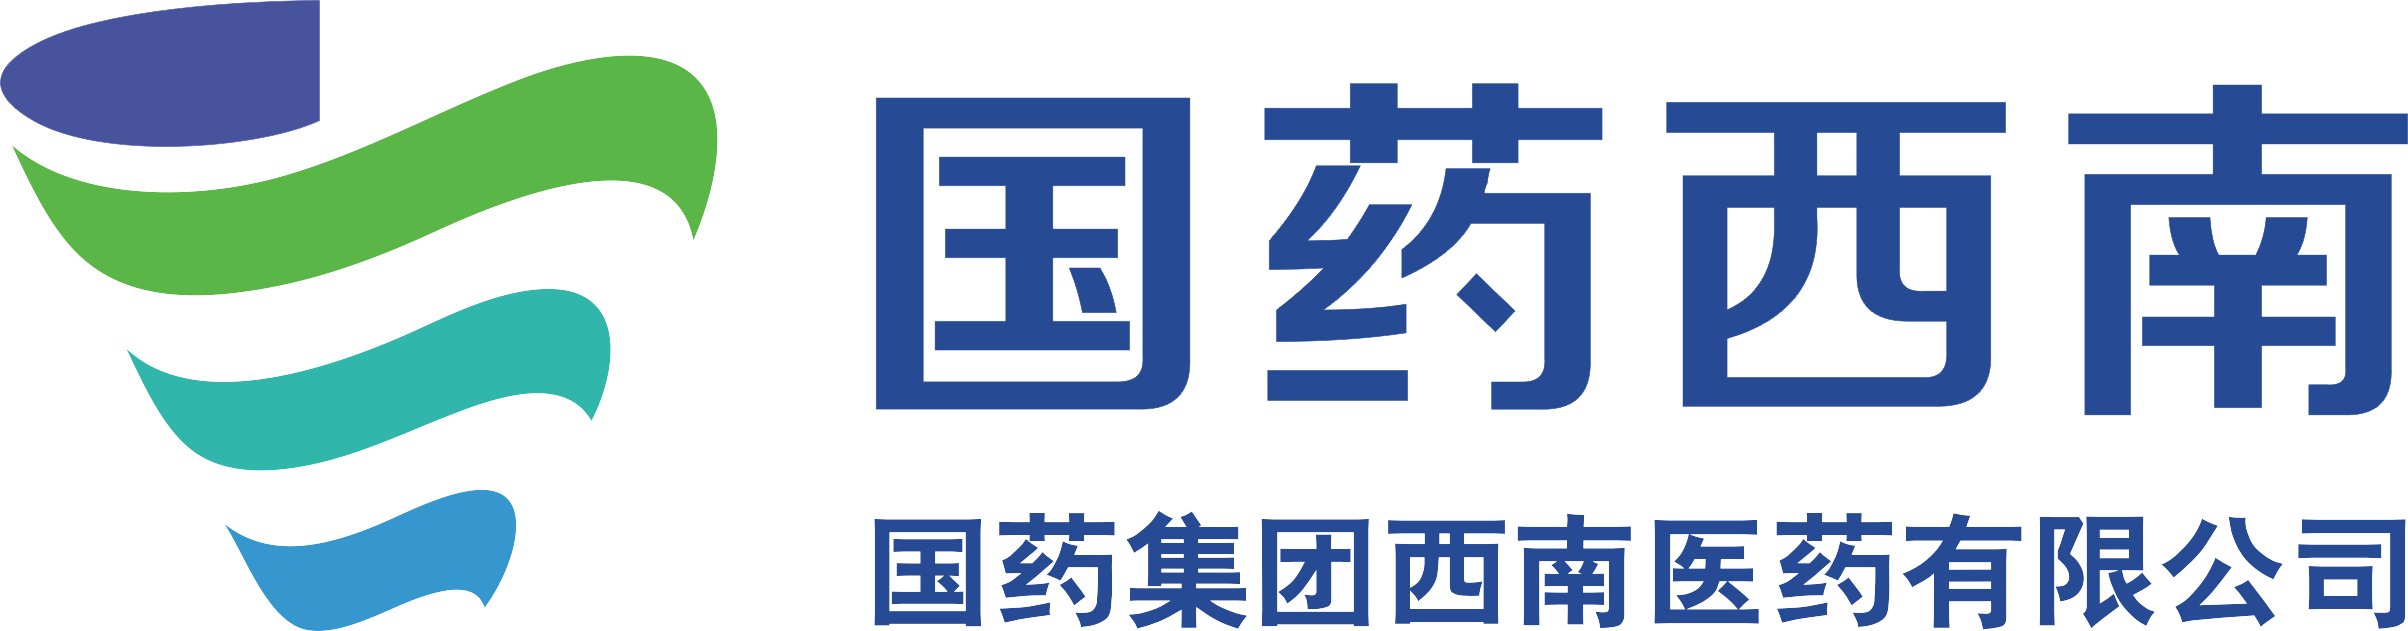 招聘简章国药集团西南医药有限公司为国药控股股份有限公司在四川设立